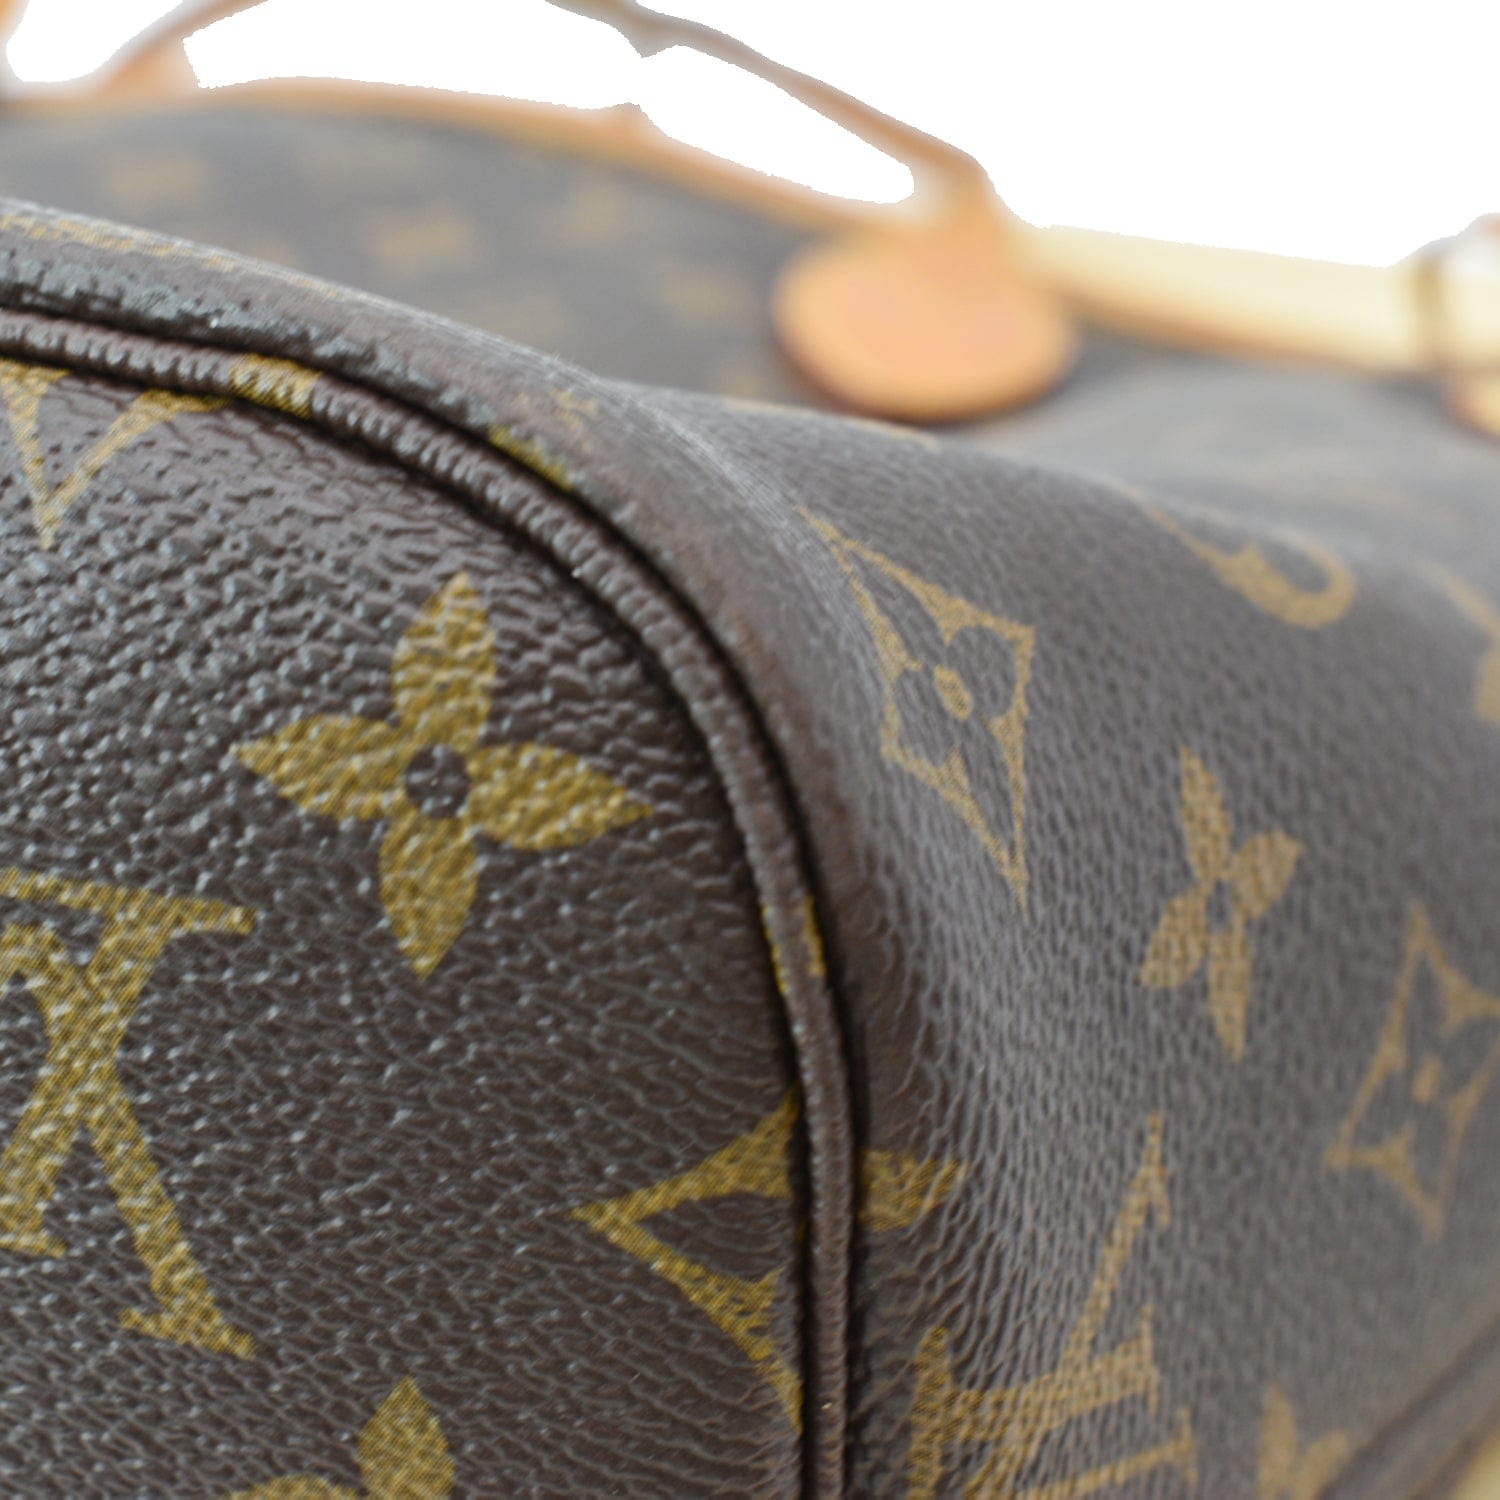 Neverfull cloth mini bag Louis Vuitton Brown in Cloth - 35665392